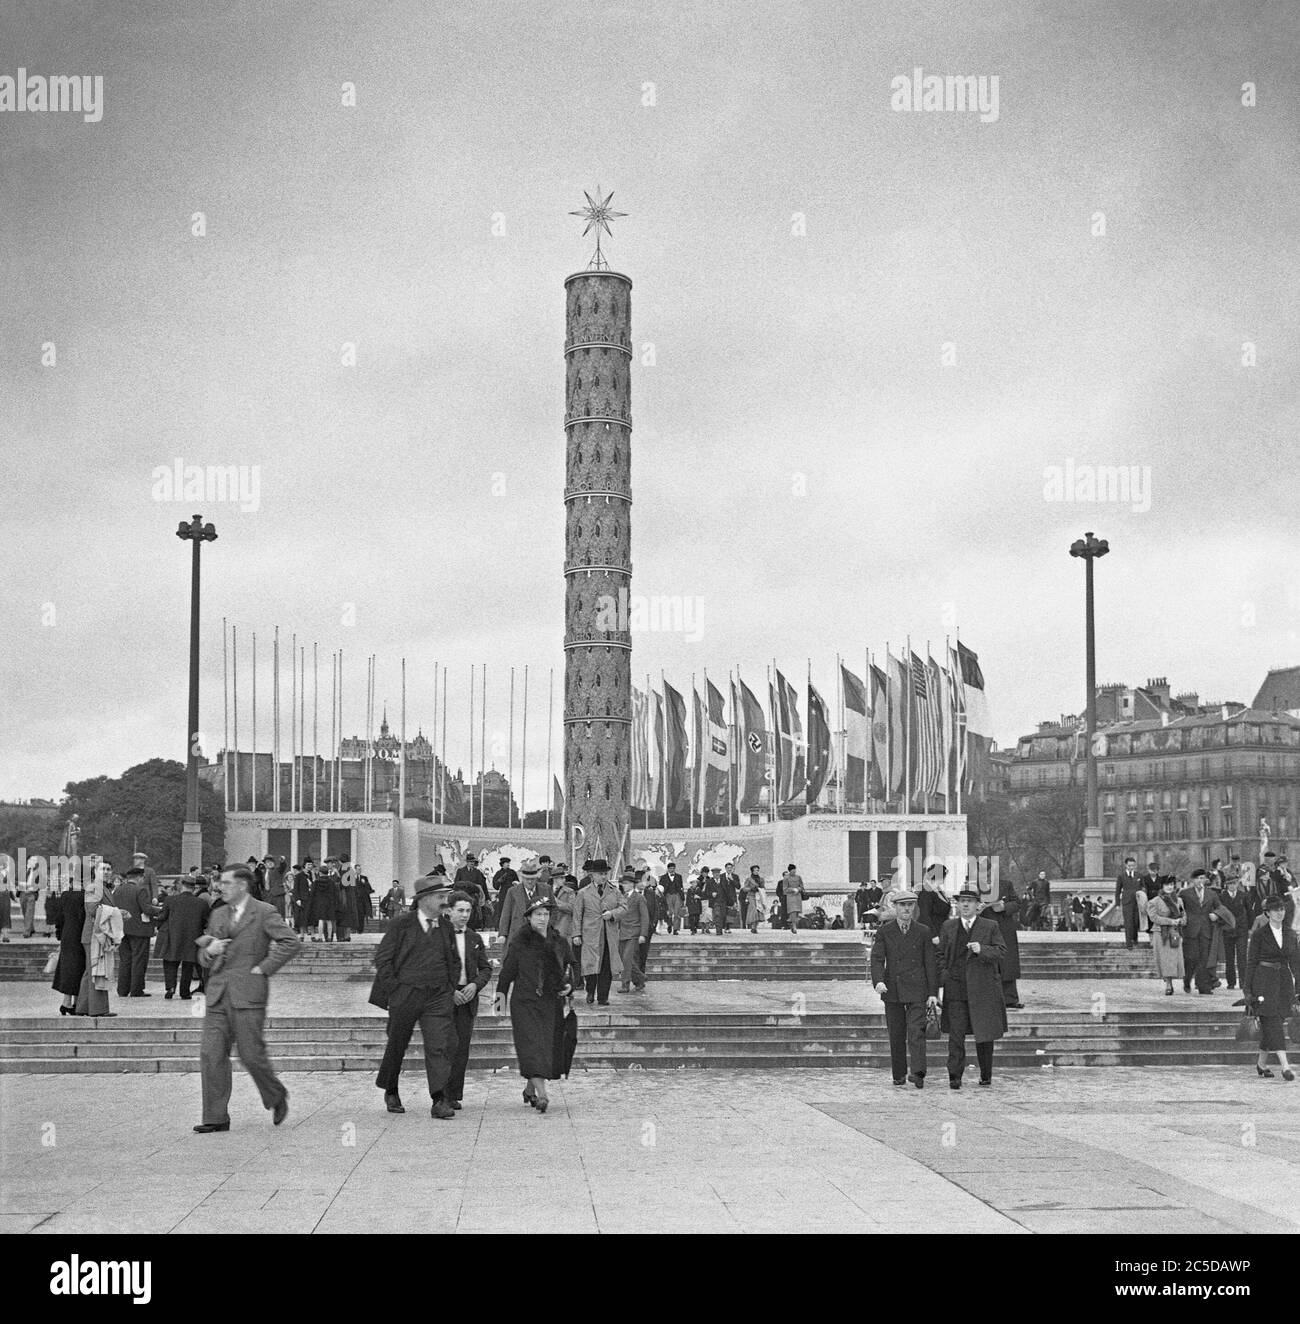 Una panoramica dell'Expo 1937 (Fiera Mondiale o esposizione) che si tiene a Parigi, Francia, qui la gente entra nel sito all'estremità nord, il Trocadero. La torre alta ha la parola "Pax" (Pace) alla sua base e le bandiere delle nazioni flutter nella brezza - compresa la bandiera tedesca con la sua swastika. Foto Stock